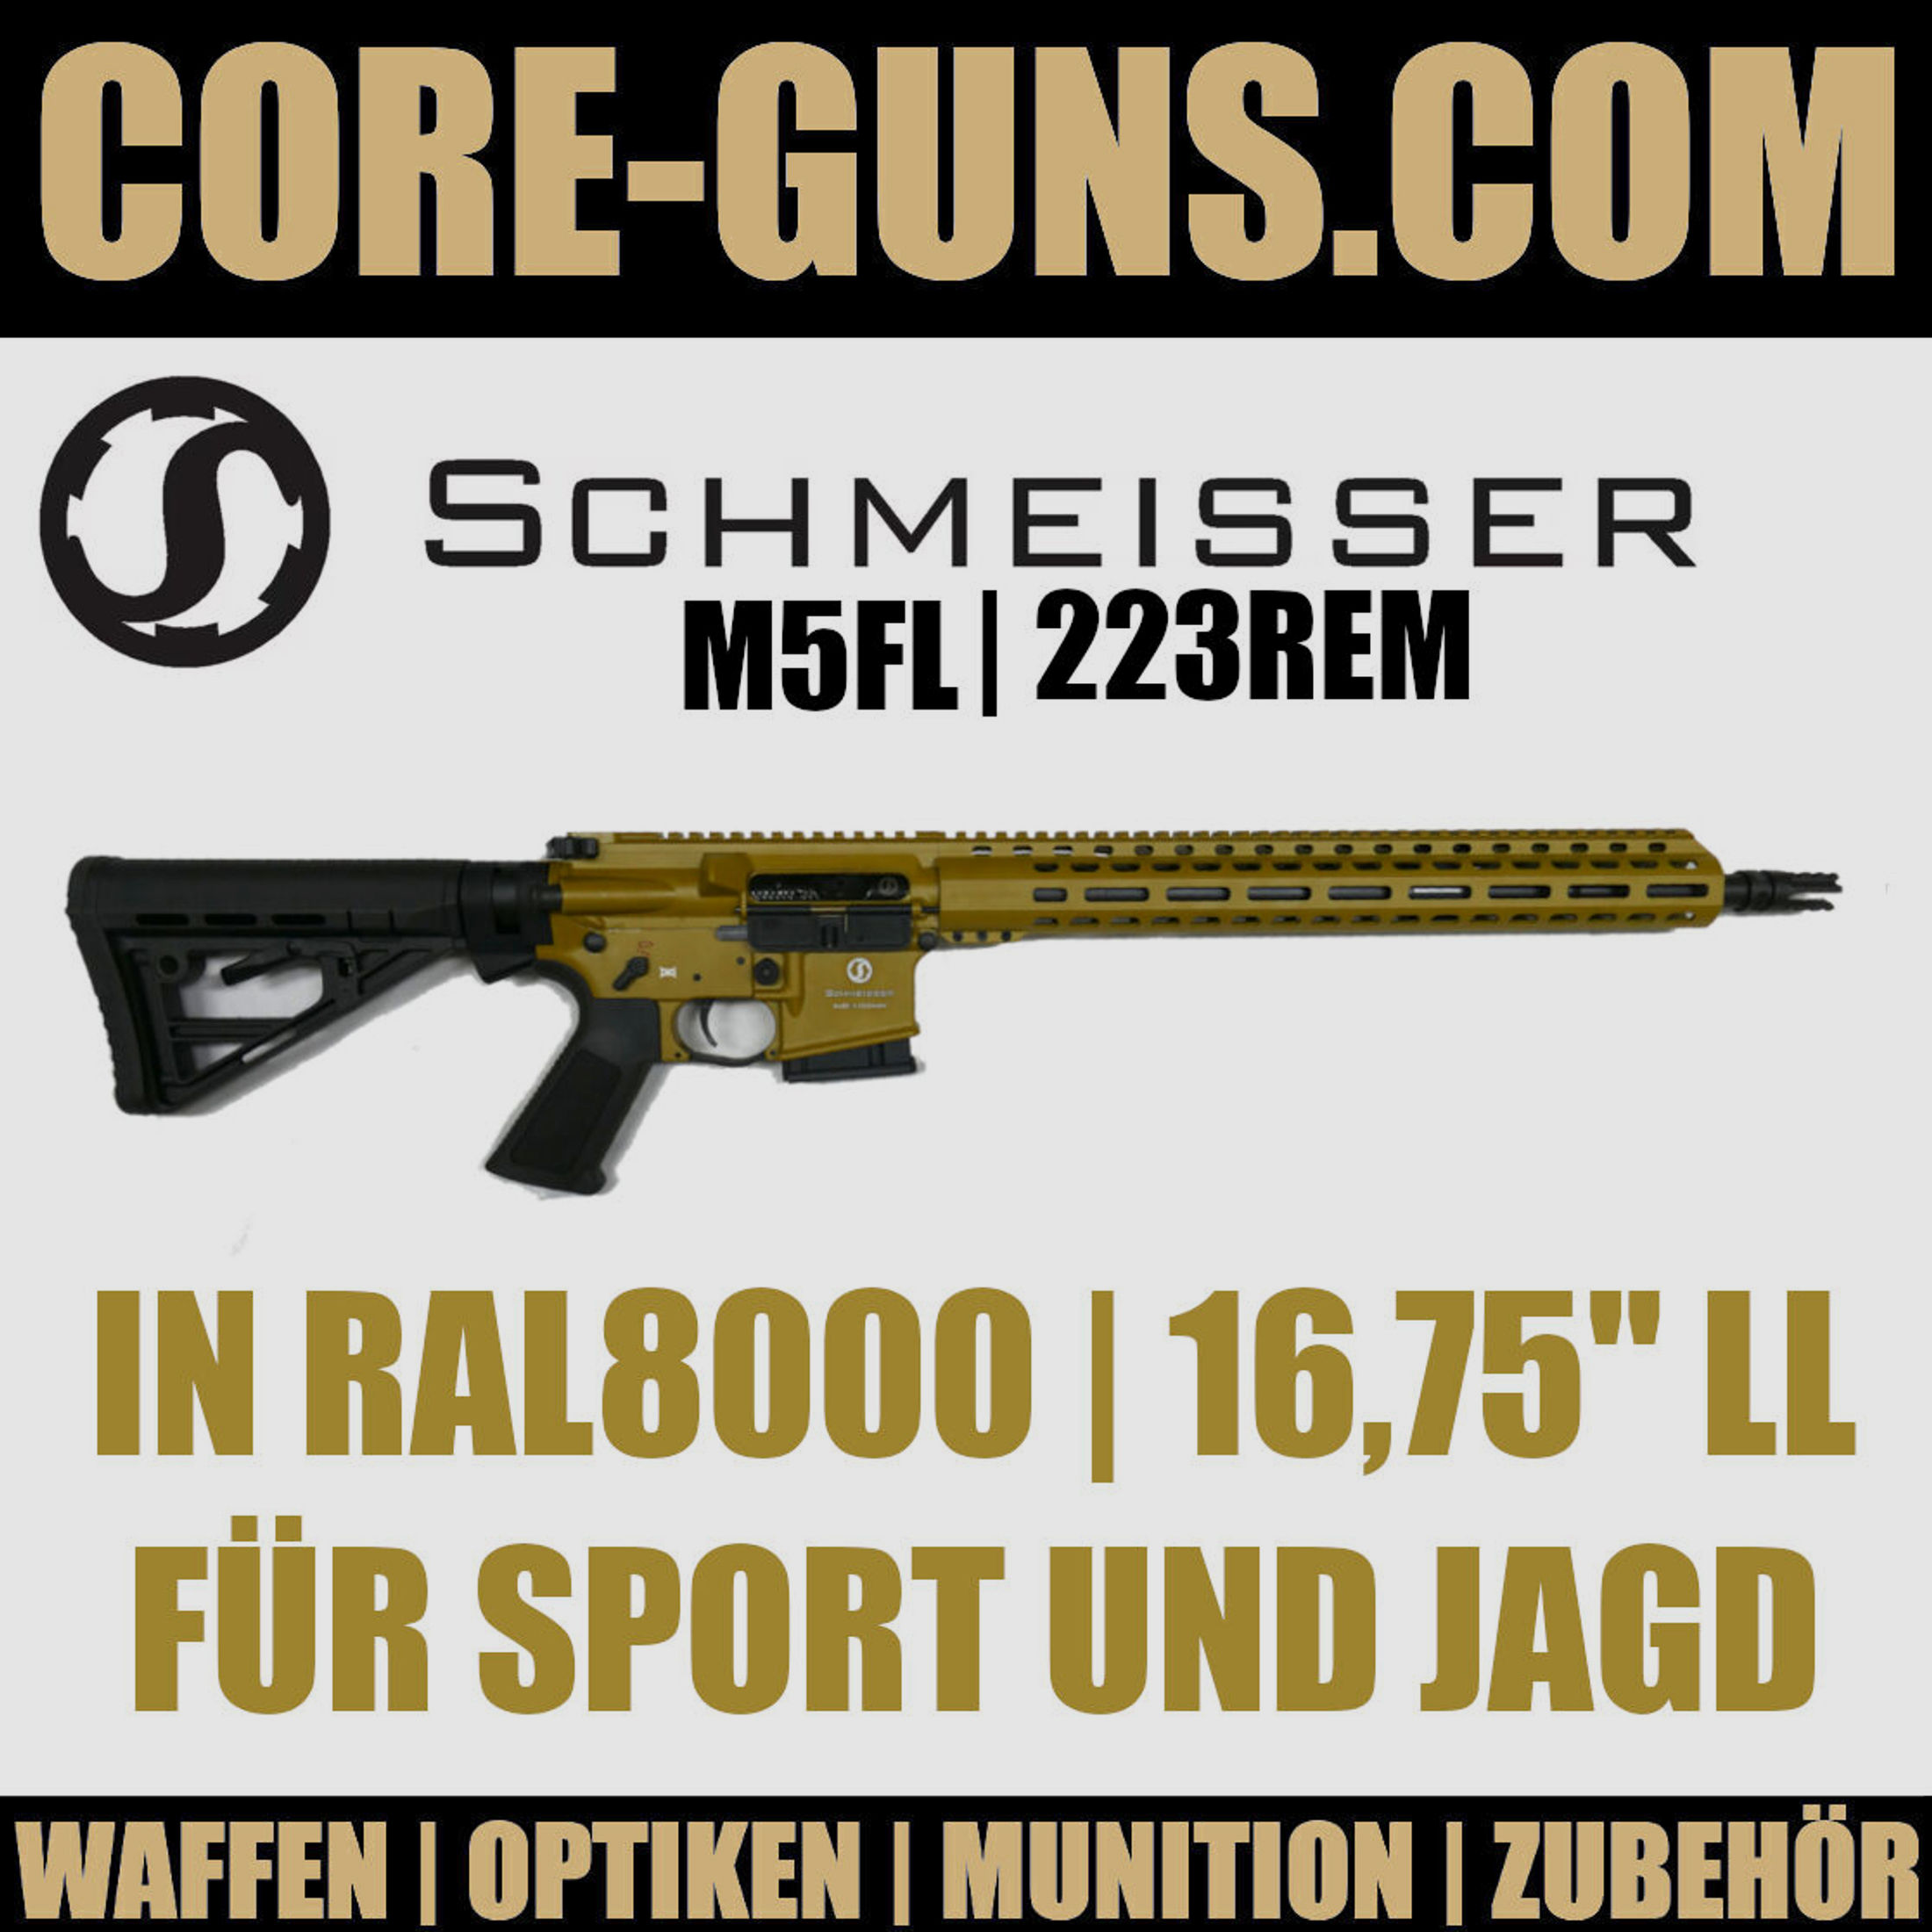 Schmeisser AR15 M5FL in RAL8000 16,75" 223Rem Selbstladebüchse	 Limited Edition